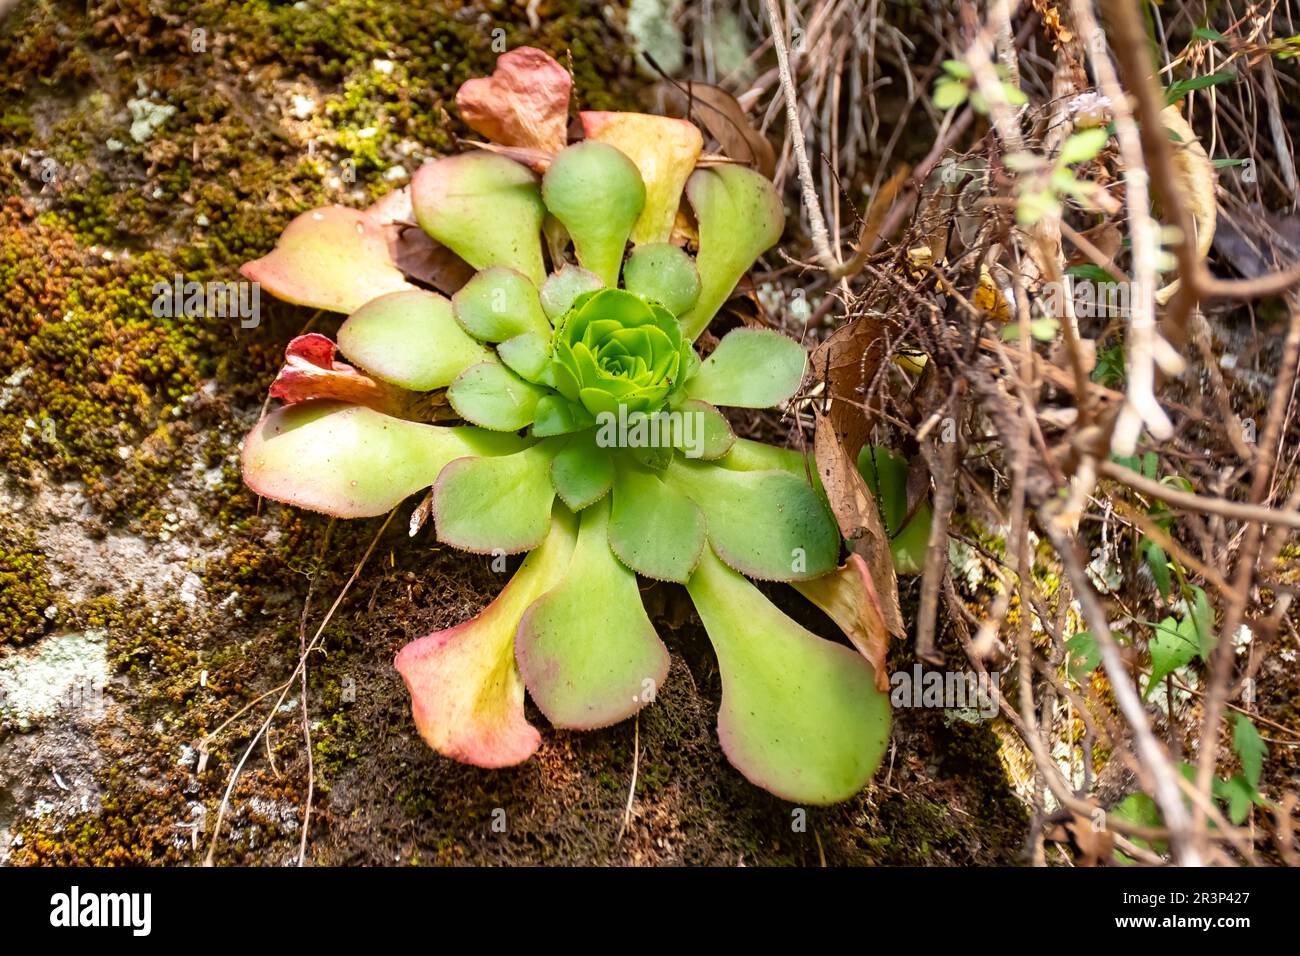 Aeonium glandulosum succulent, endemic to Madeira islands, Portugal Stock Photo